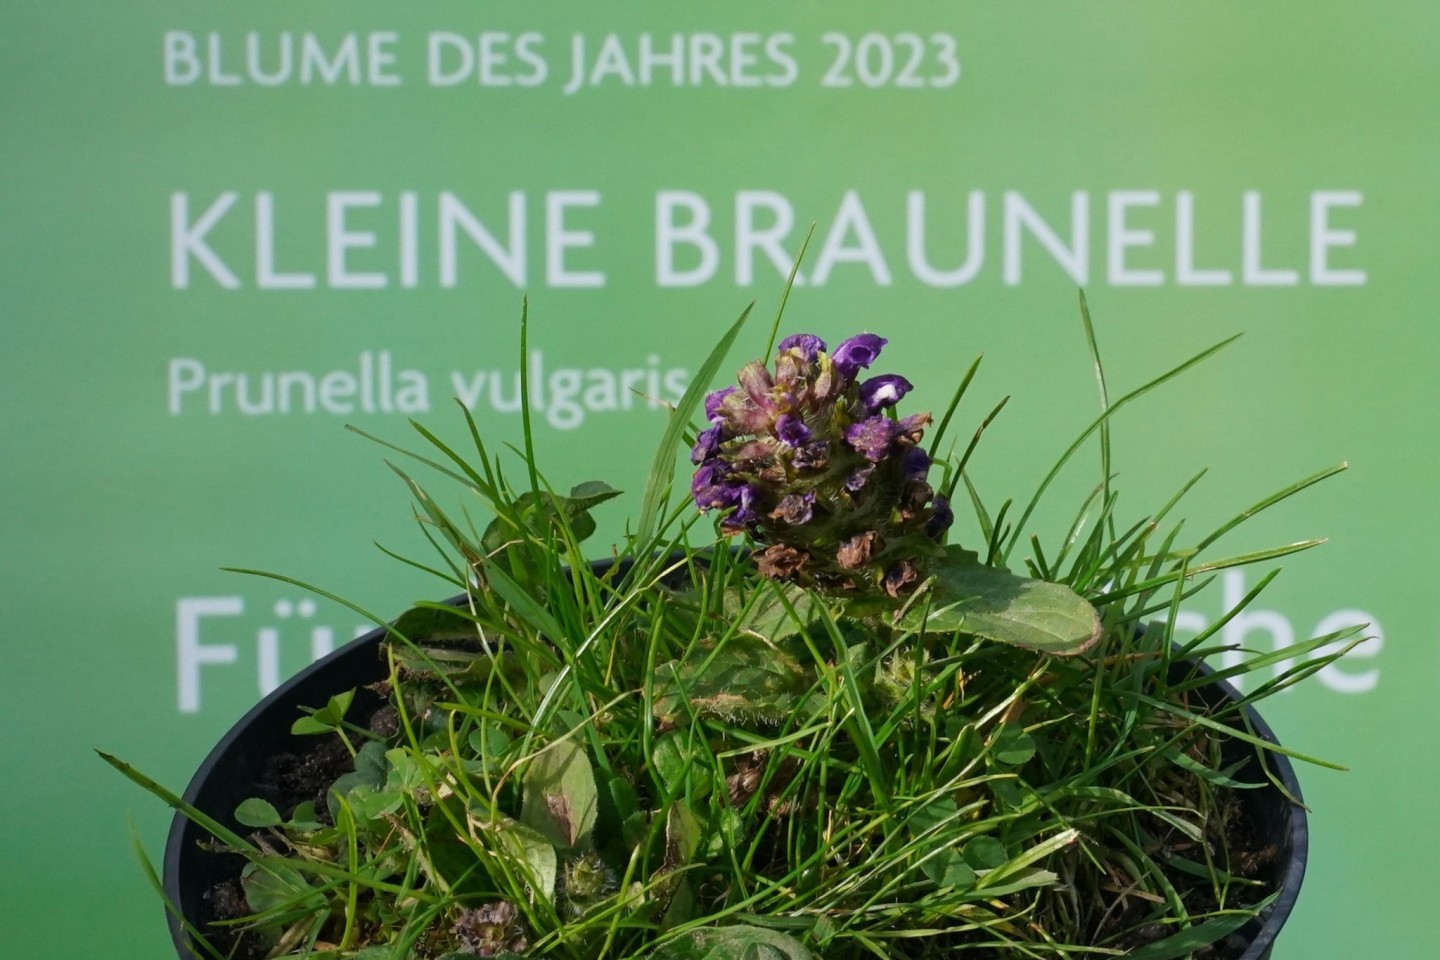 Mit der Wahl der Kleinen Braunelle zur «Blume des Jahres 2023» soll auf den schleichenden Verlust heimischer Wildpflanzen aufmerksam gemacht werden.